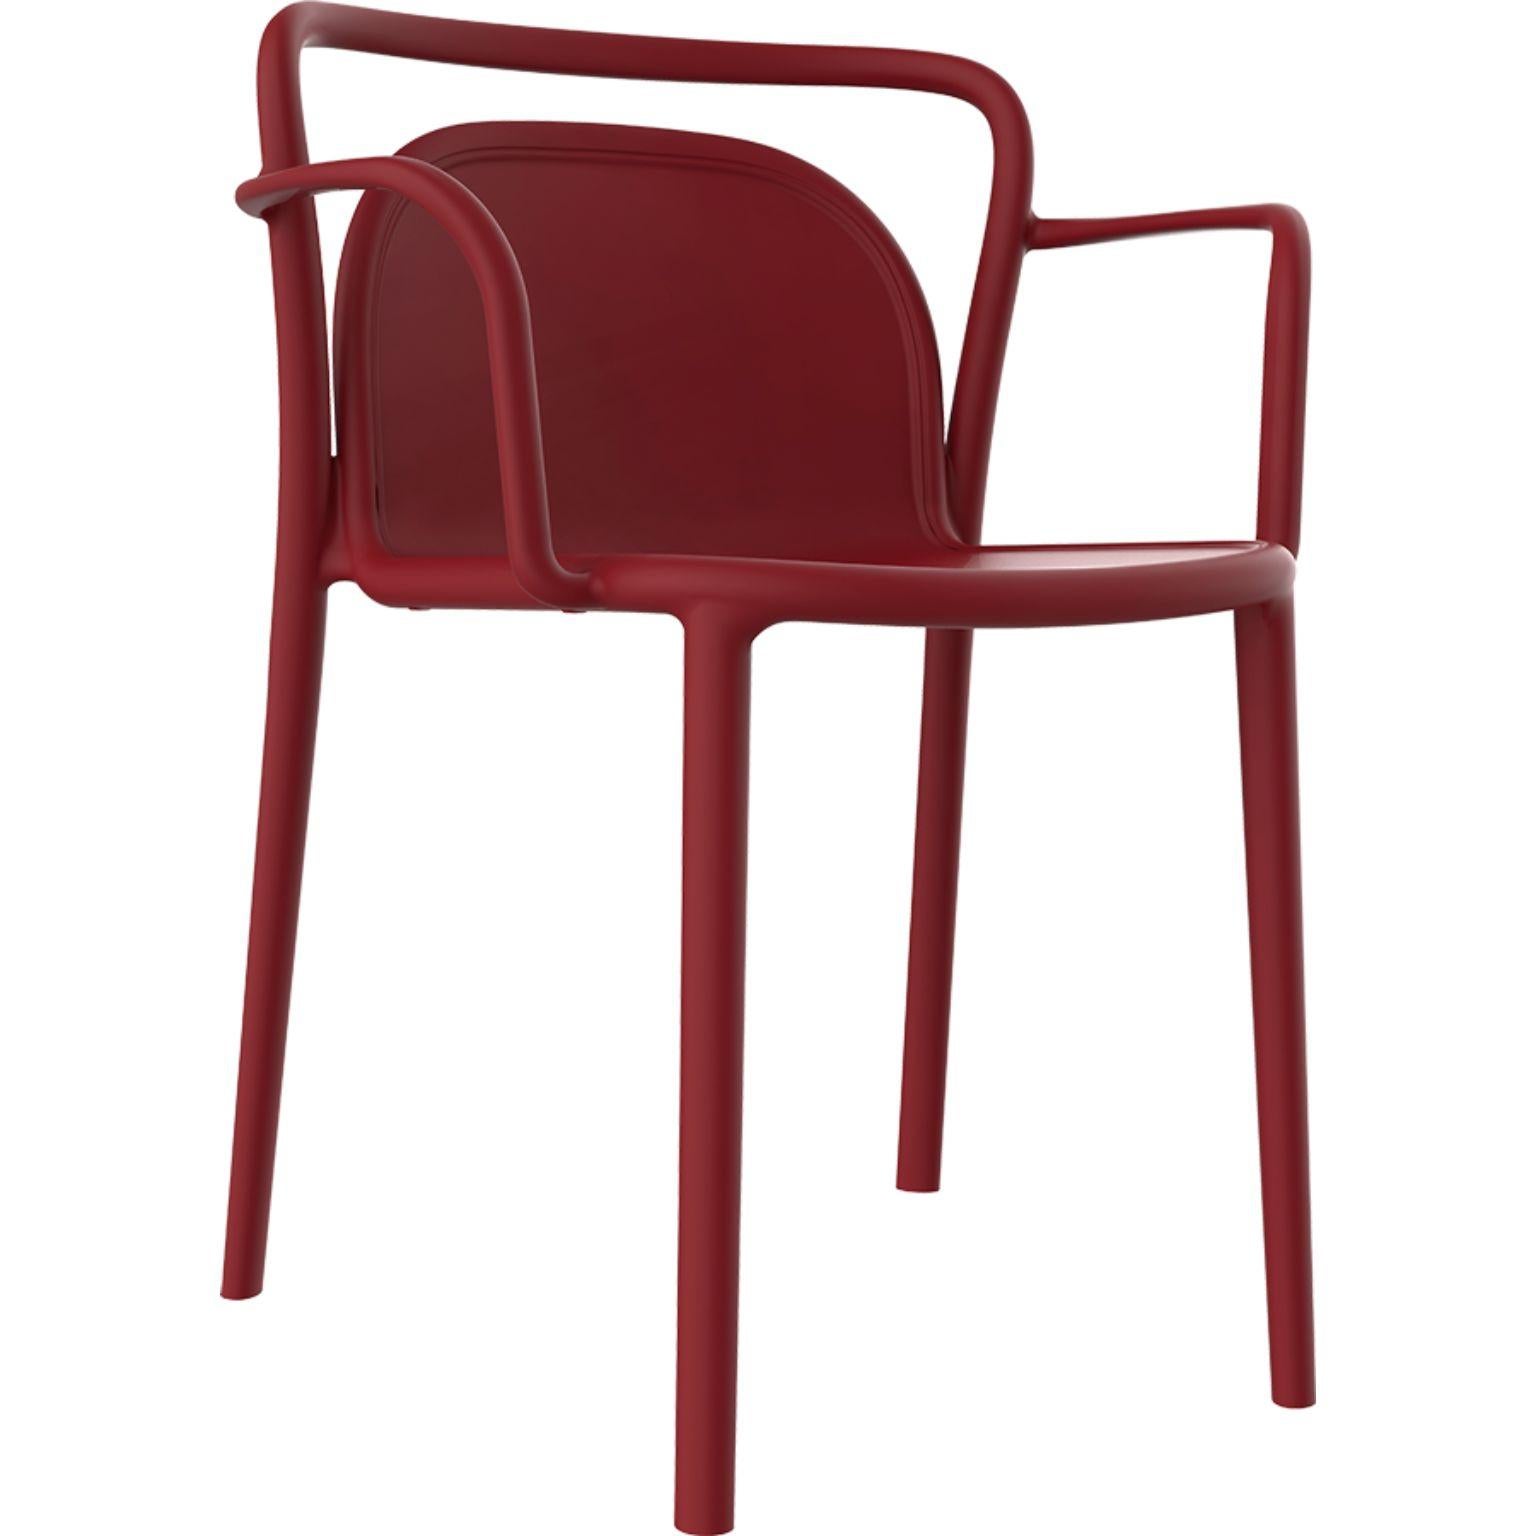 4er set classe stühle in burgund von MOWEE
Abmessungen: T52 x B52 x H77 cm (Sitzhöhe 45 cm)
MATERIAL: Polypropylenharz mit Glasfasern.
Gewicht: 4.6 kg
Auch in verschiedenen Farben erhältlich. Optional kann ein Kissen hinzugefügt werden.